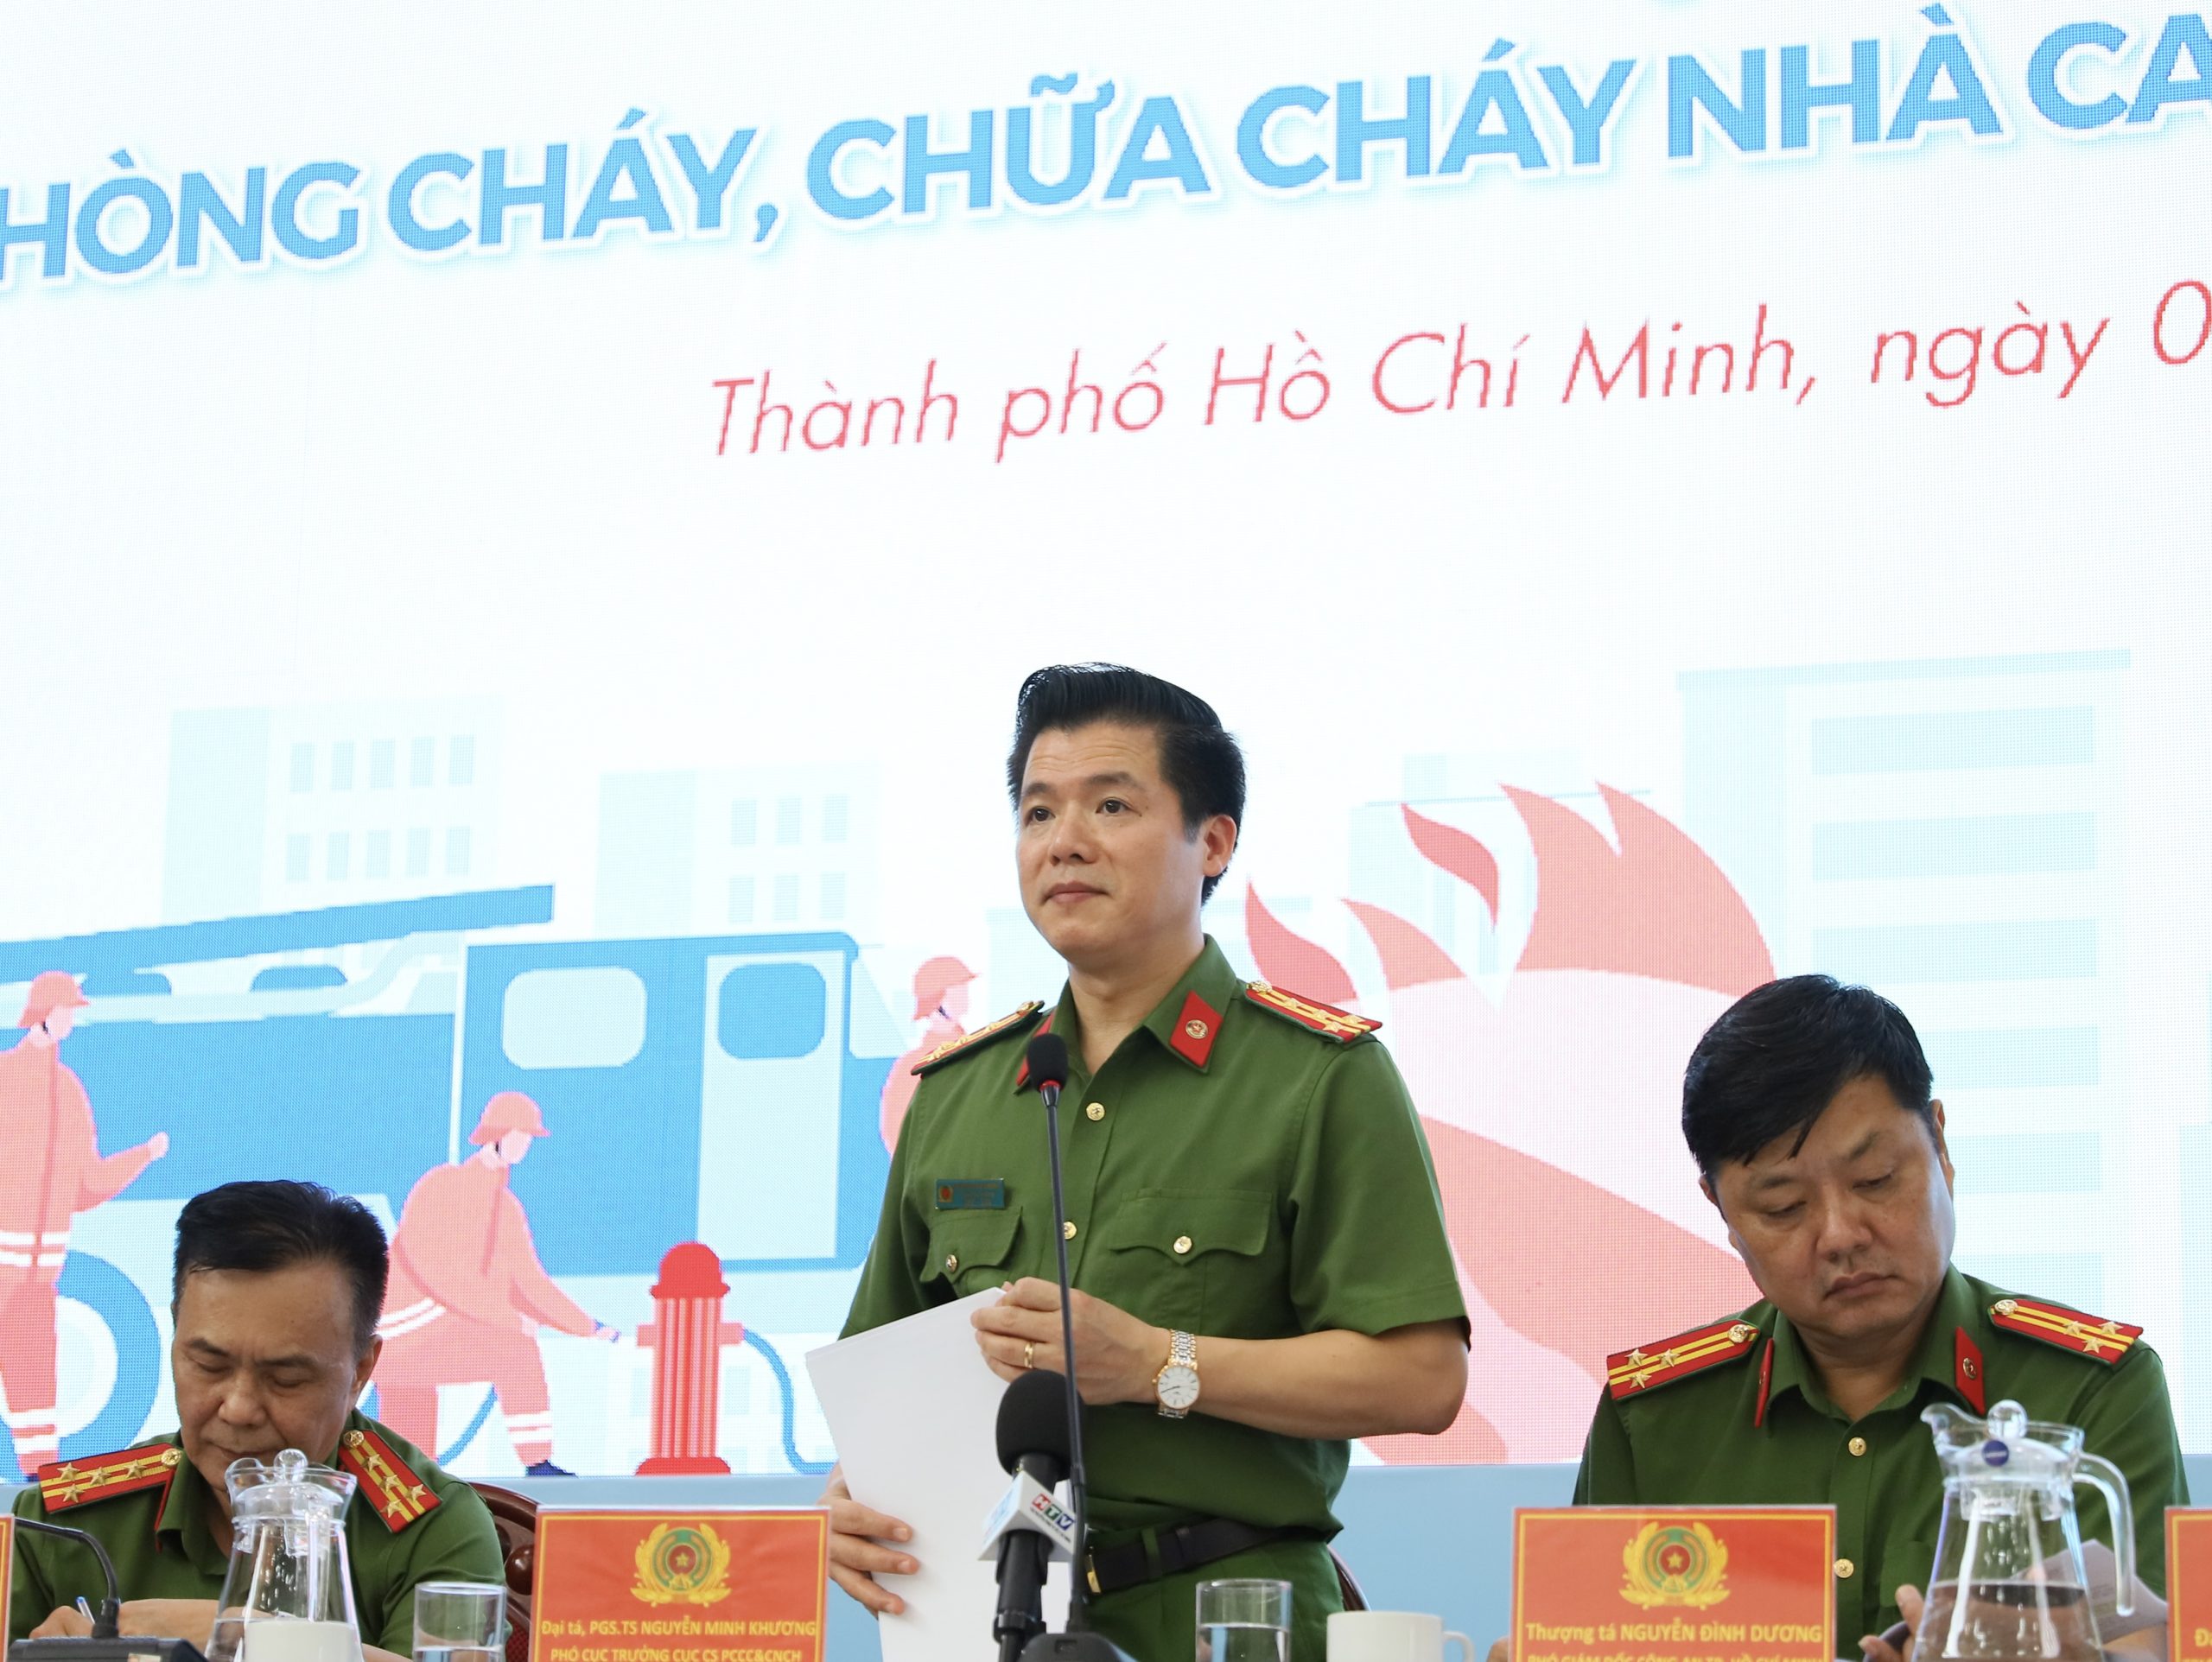 Đại tá, PGS.TS Nguyễn Minh Khương, Phó Cục trưởng Cục Cảnh sát PCCC và CNCH phát biểu